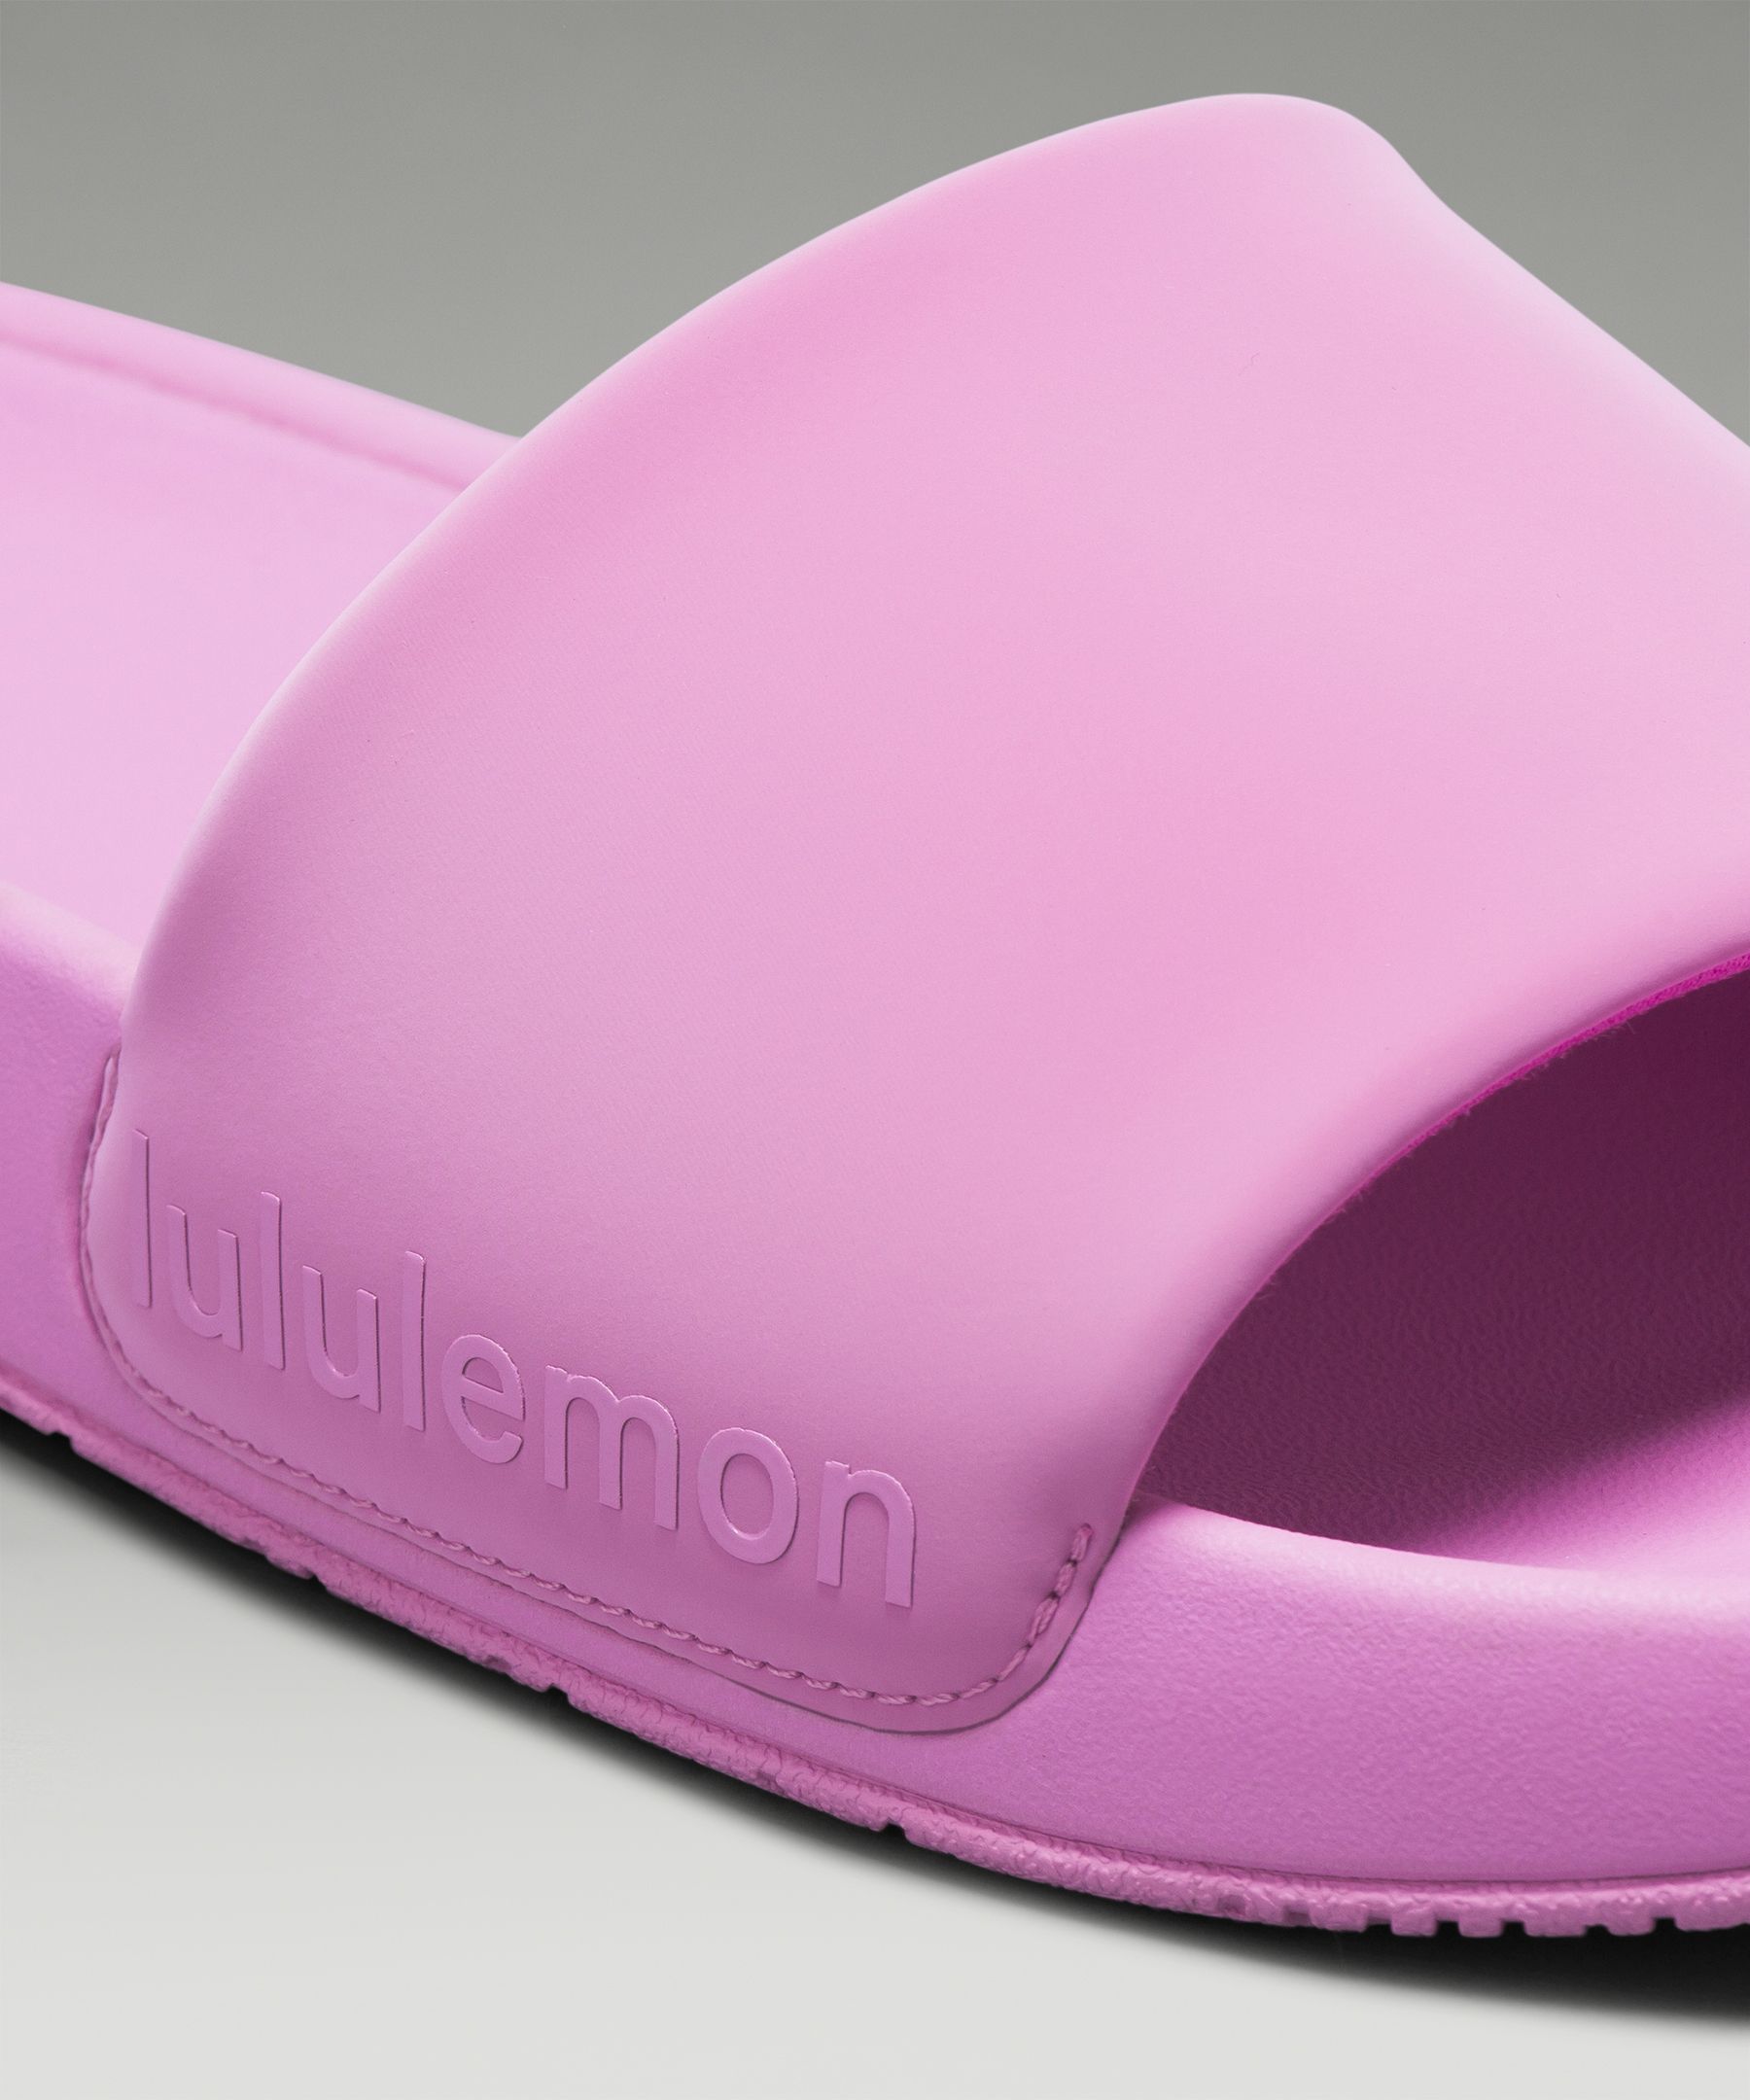 Shoes, Lululemon Nwt Womens Restfeel Slides Size 11